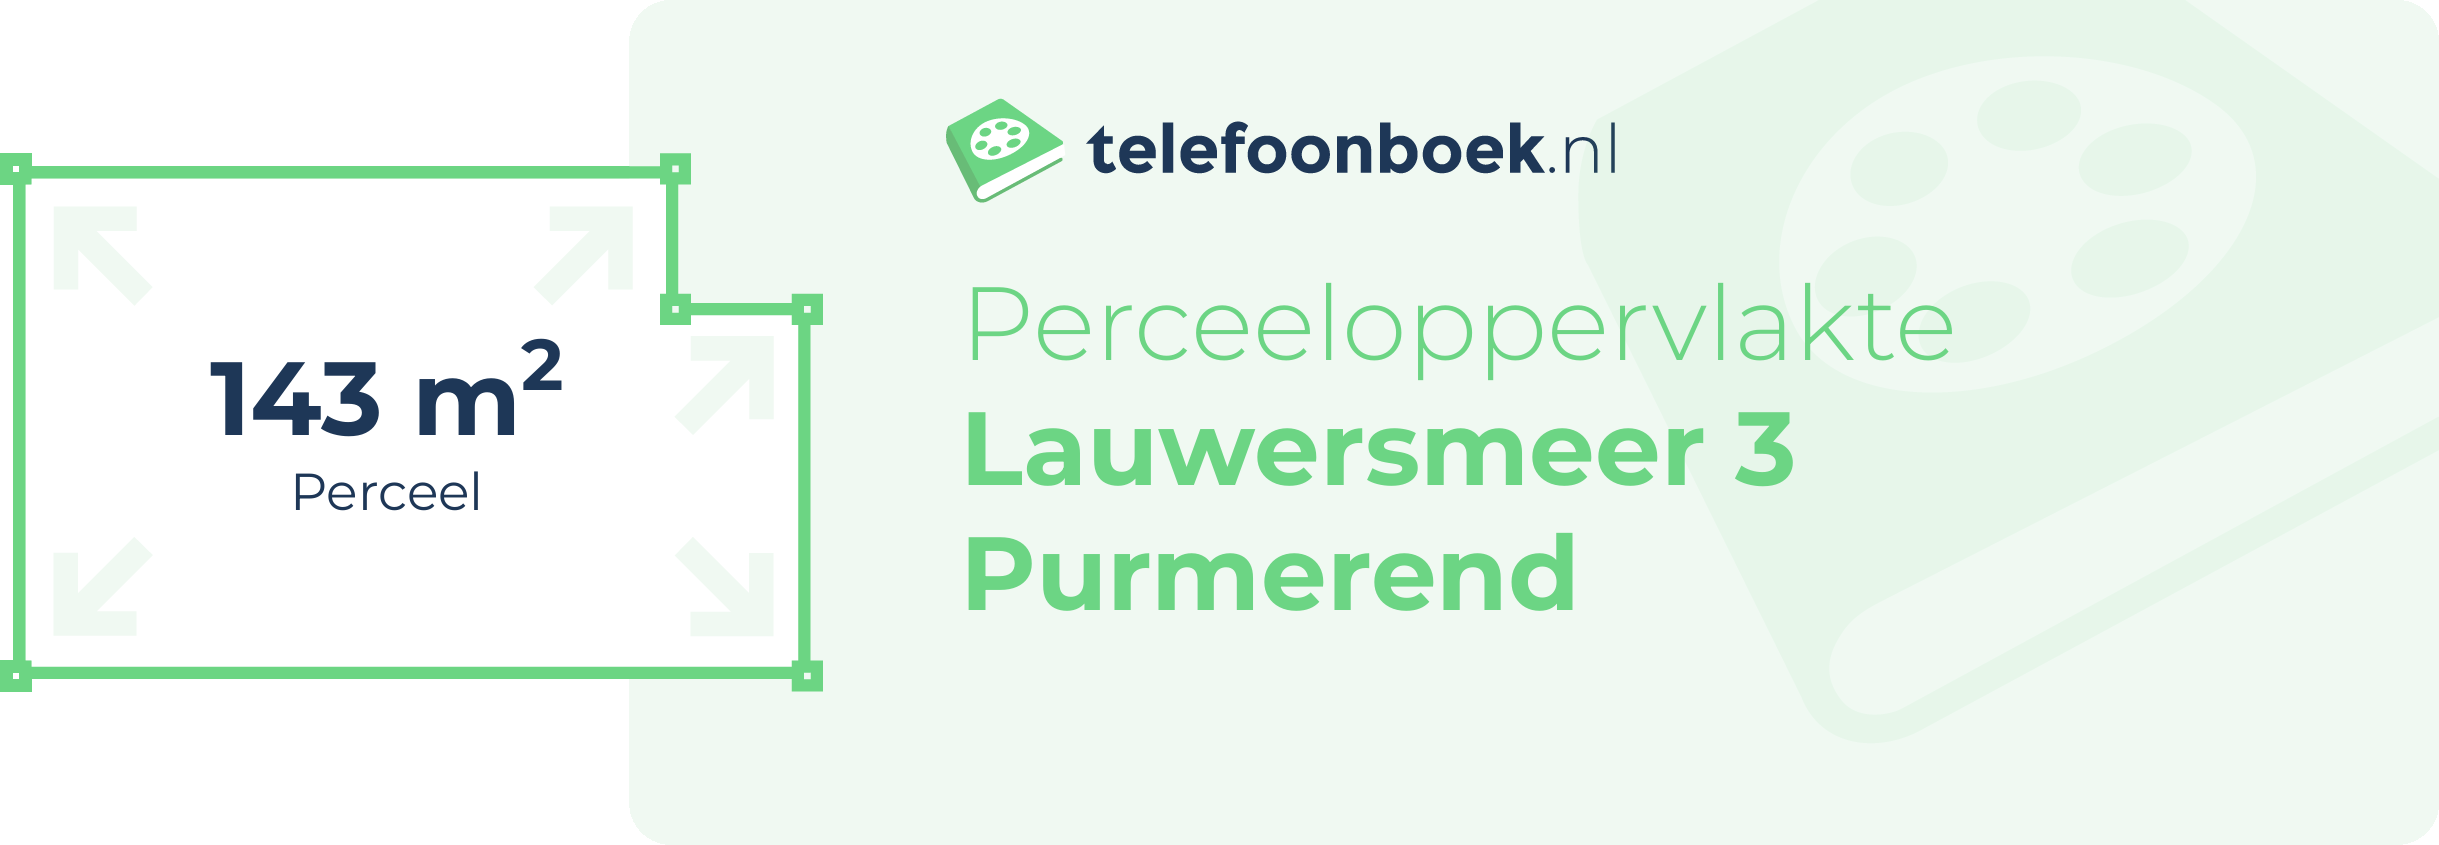 Perceeloppervlakte Lauwersmeer 3 Purmerend